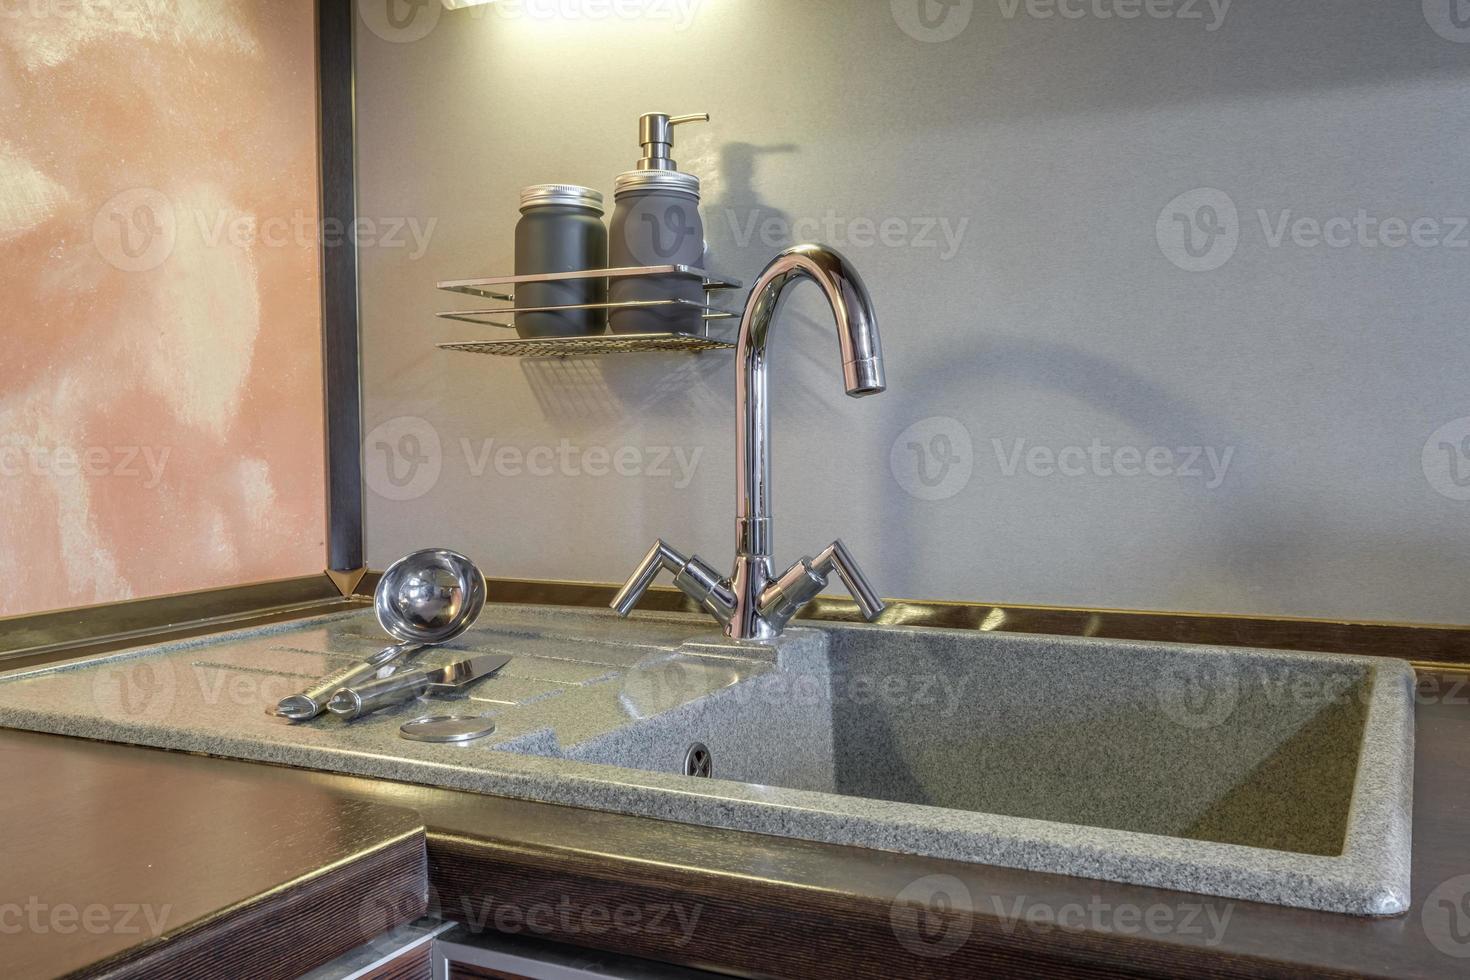 Seifen- und Shampoospender in der Nähe von keramischem Wasserhahn mit Wasserhahn in teurer Küche foto